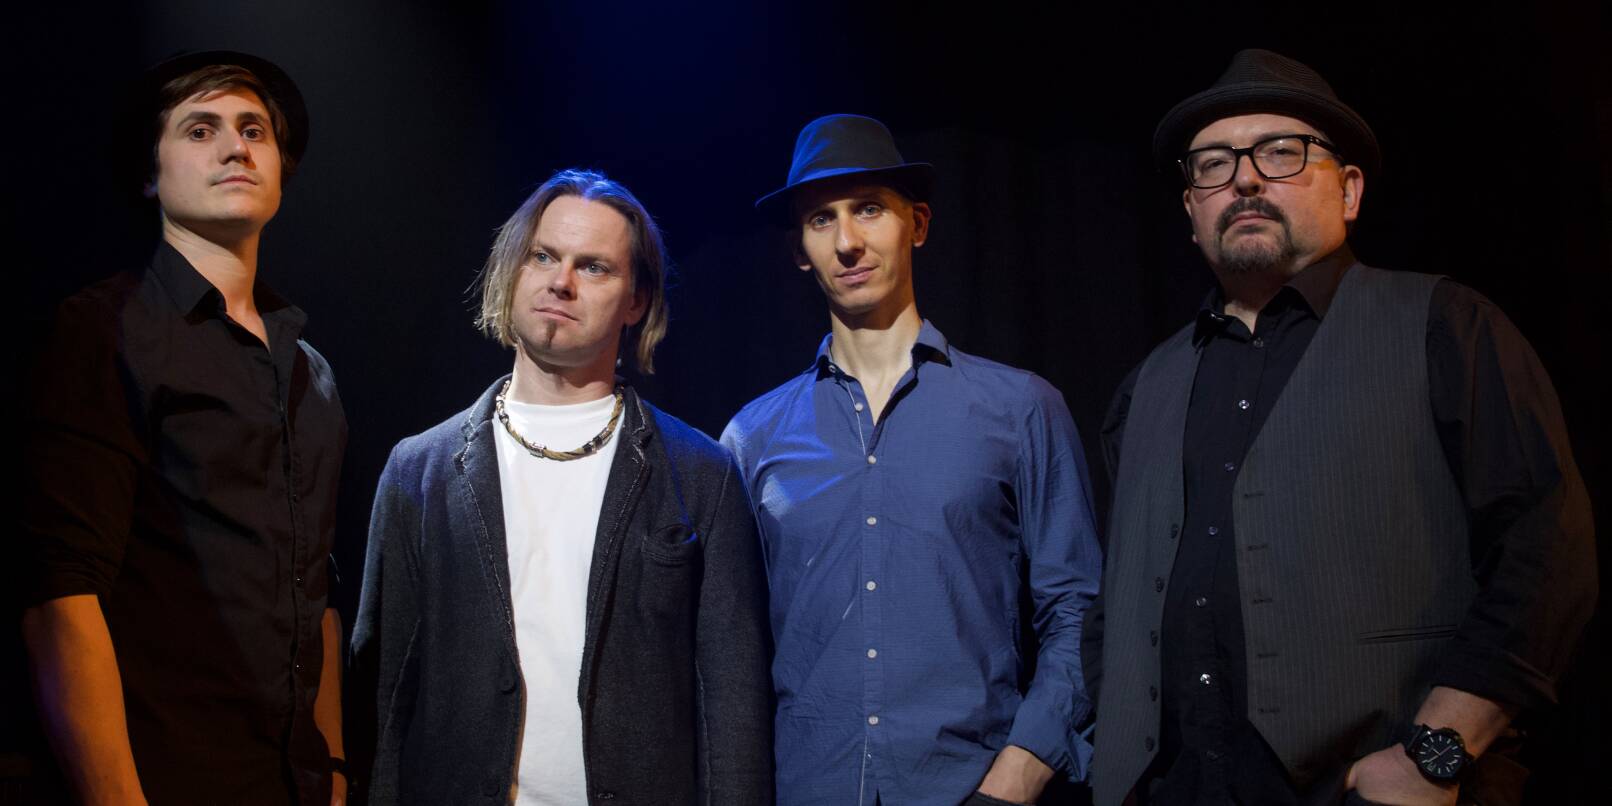 Nico Braxmaier, Sebastian Strodtbeck, Marc Fibich und Nic Schmidt (von links) stehen als Band "Clapton Experience" am Freitag auf der Bühne in Weinheim.